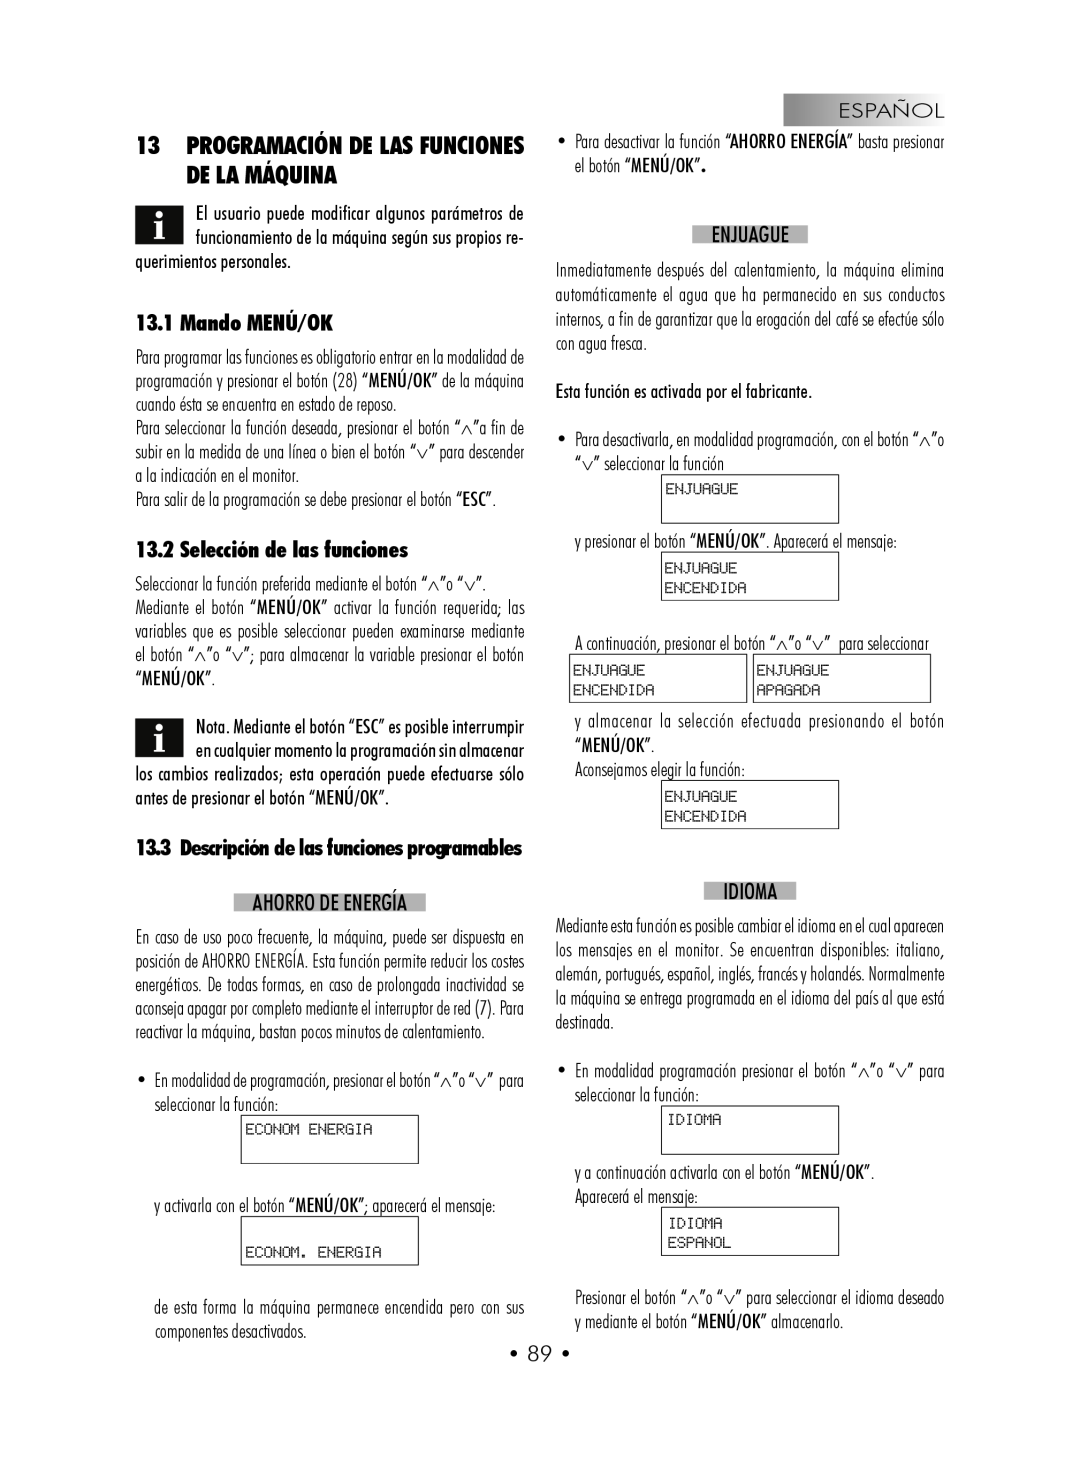 Gaggia SUP027YDR manual 13PROGRAMACIÓN DE LAS FUNCIONES DE LA MÁQUINA, Mando MENÚ/OK, Selección de las funciones 